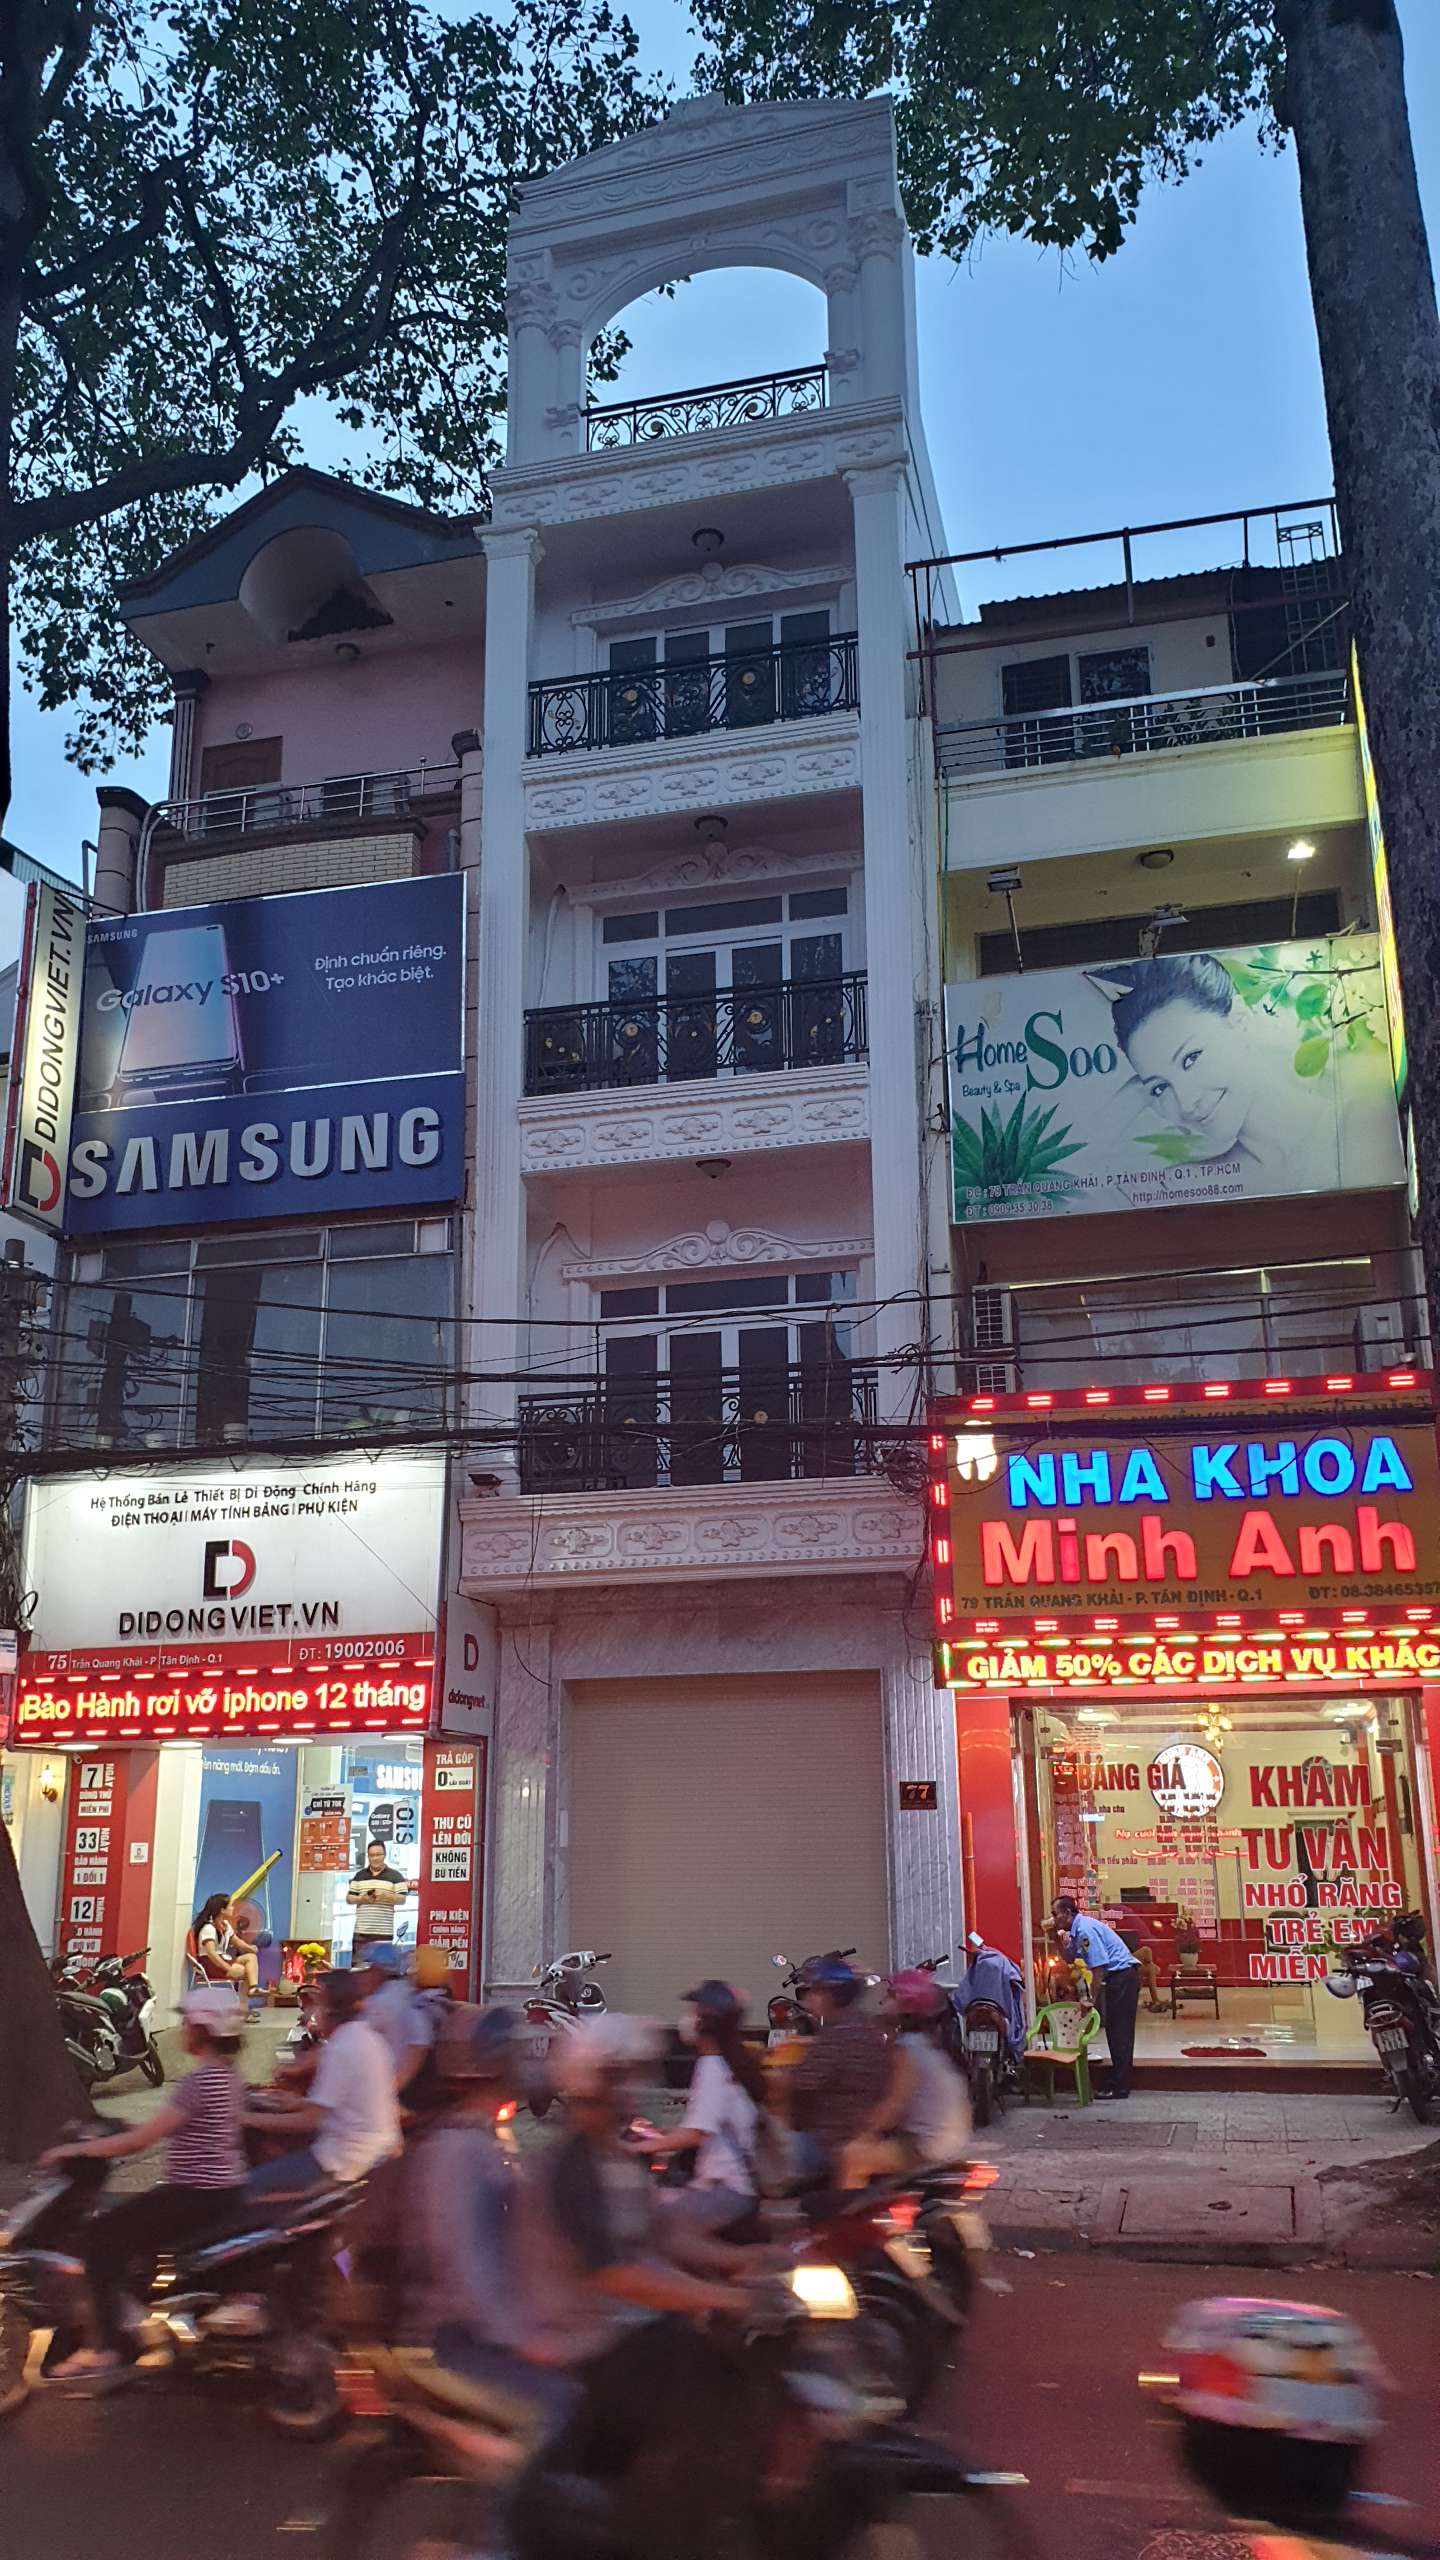 Nhà cho thuê mặt tiền 93 Trần Quang Khải, Phường Tân Định, quận 1.Giá 4.500USD